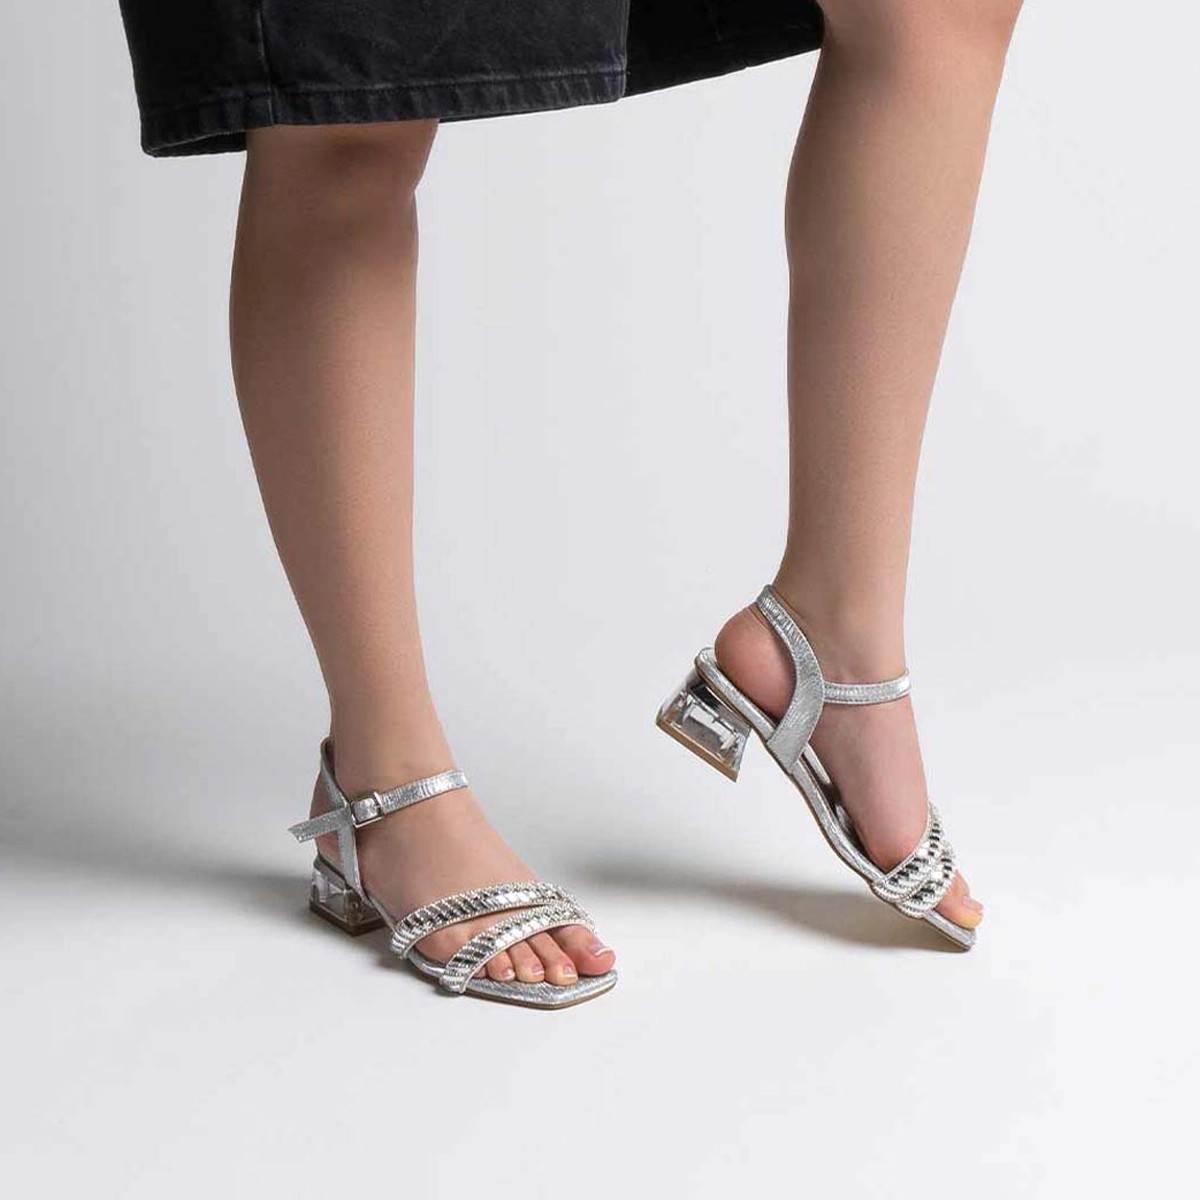 Tekstil Taşlı Kalın Kısa Topuklu Sandalet - Gümüş